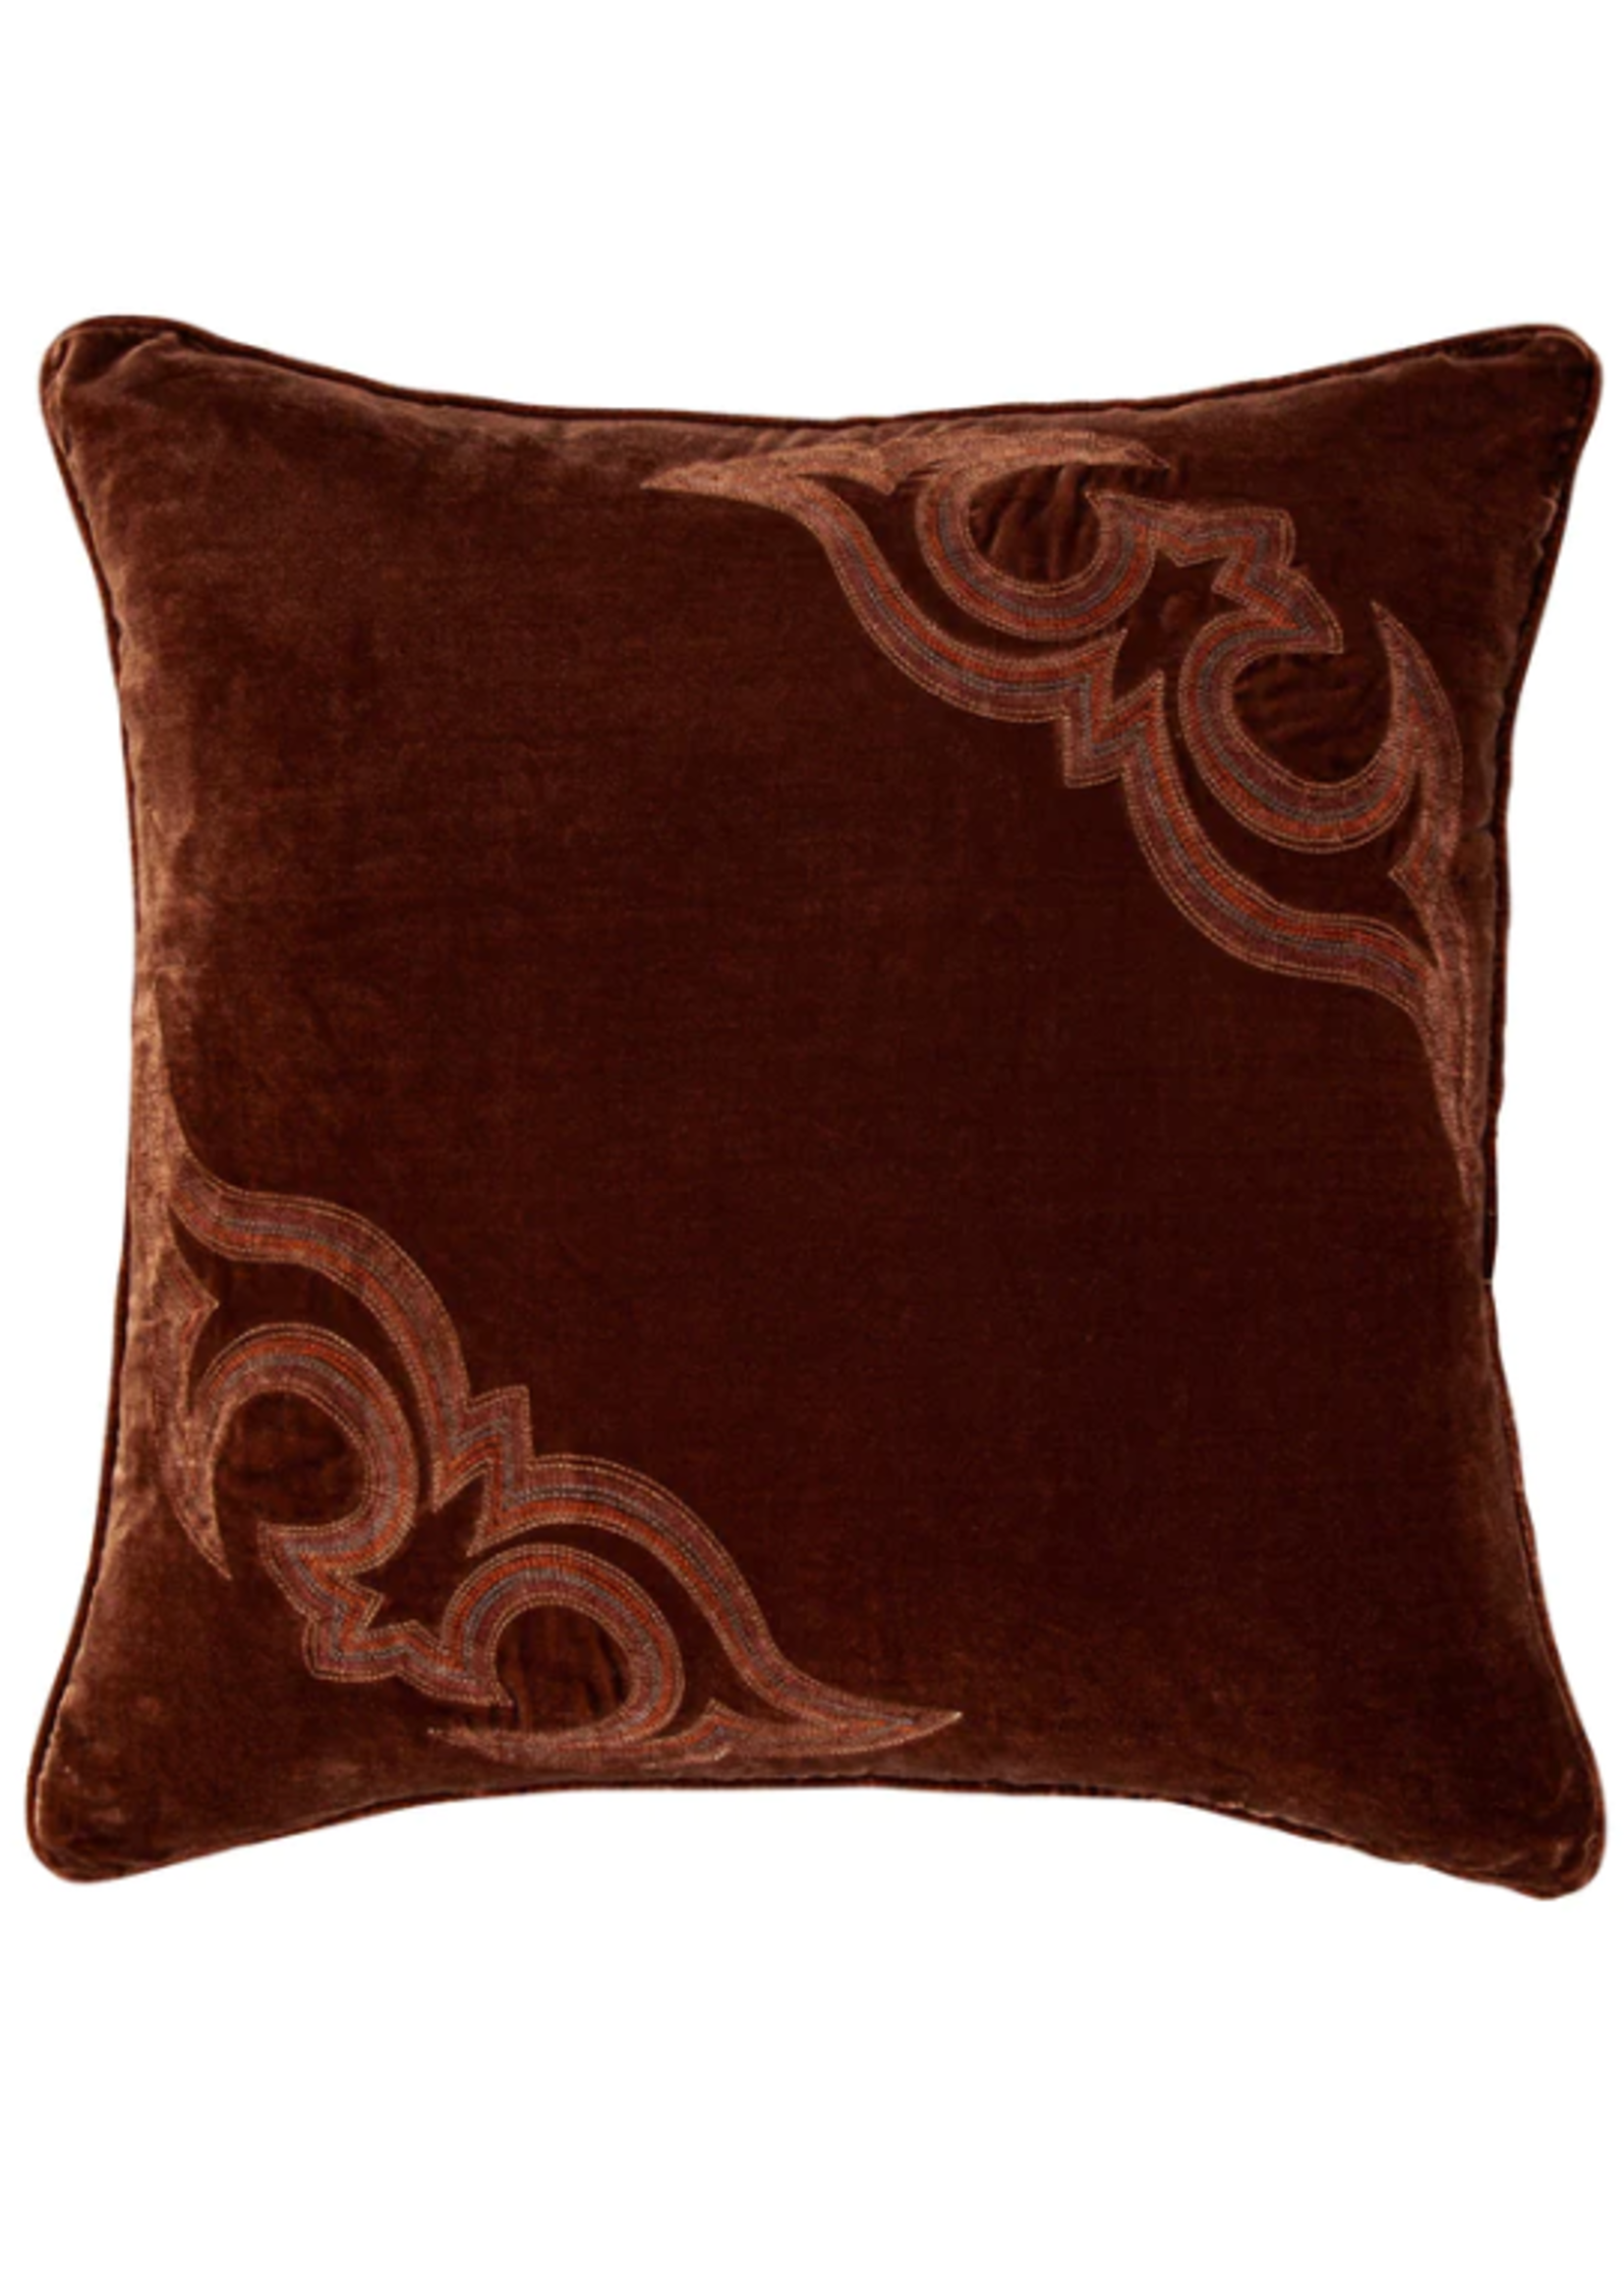 HIEND HiEND Boot Stitch Embroidered Silk Velvet Pillow, 22x22, Copper Brown